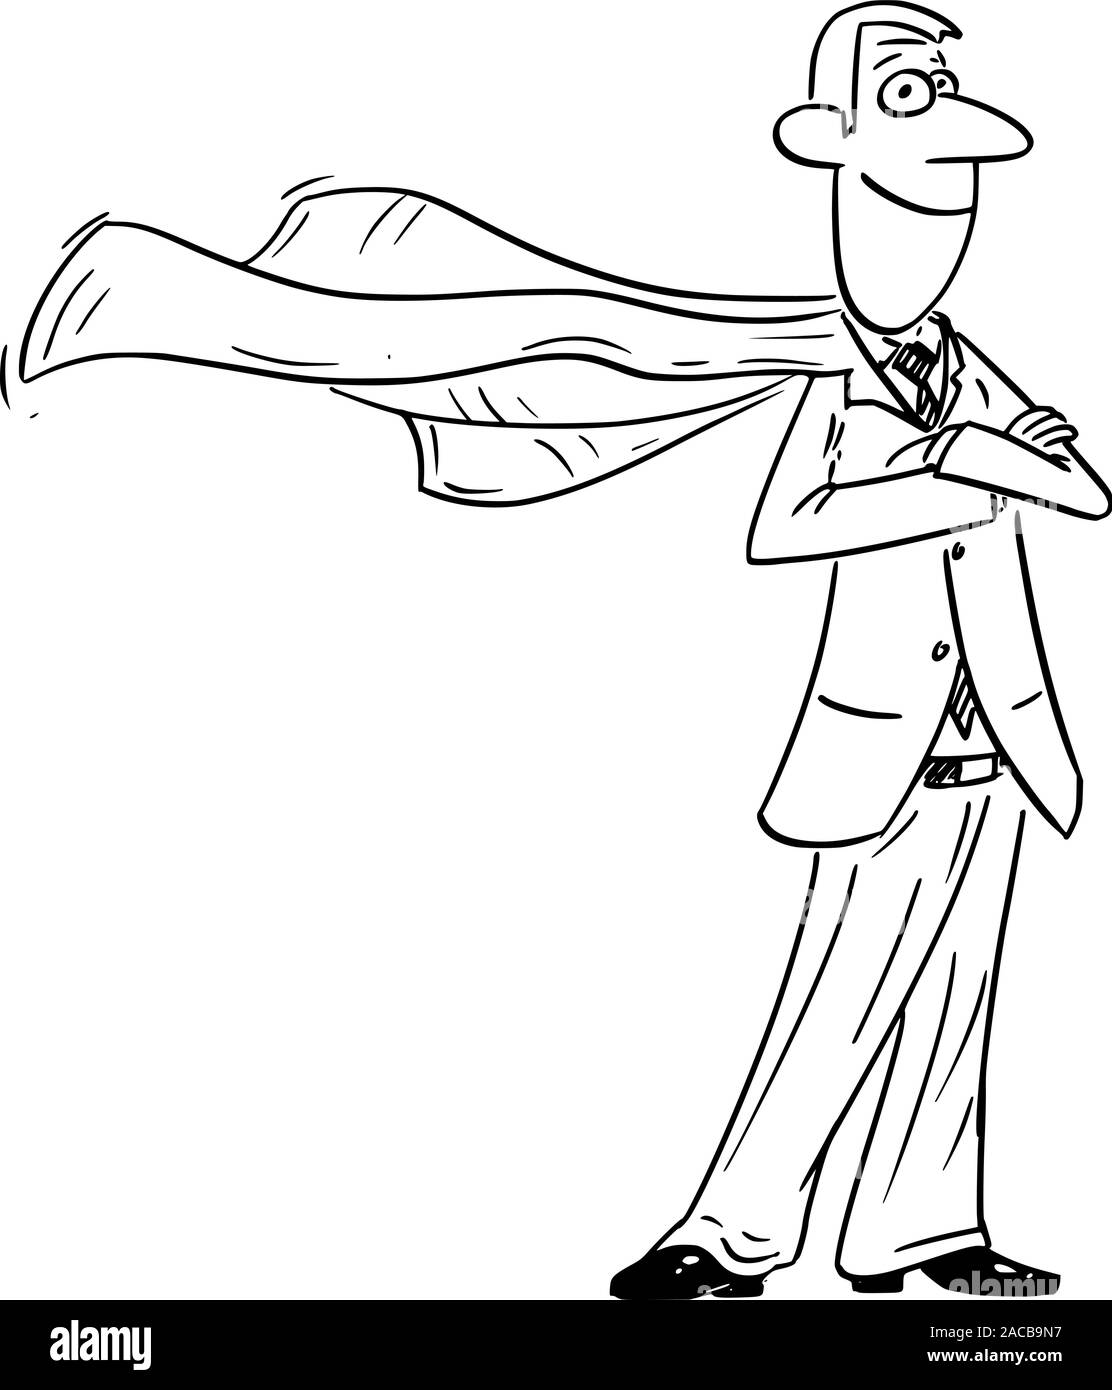 Vektor witzigen Comic cartoon Zeichnung der zuversichtlich Geschäftsmann Superhelden posiert mit fliegenden Kap. Stock Vektor